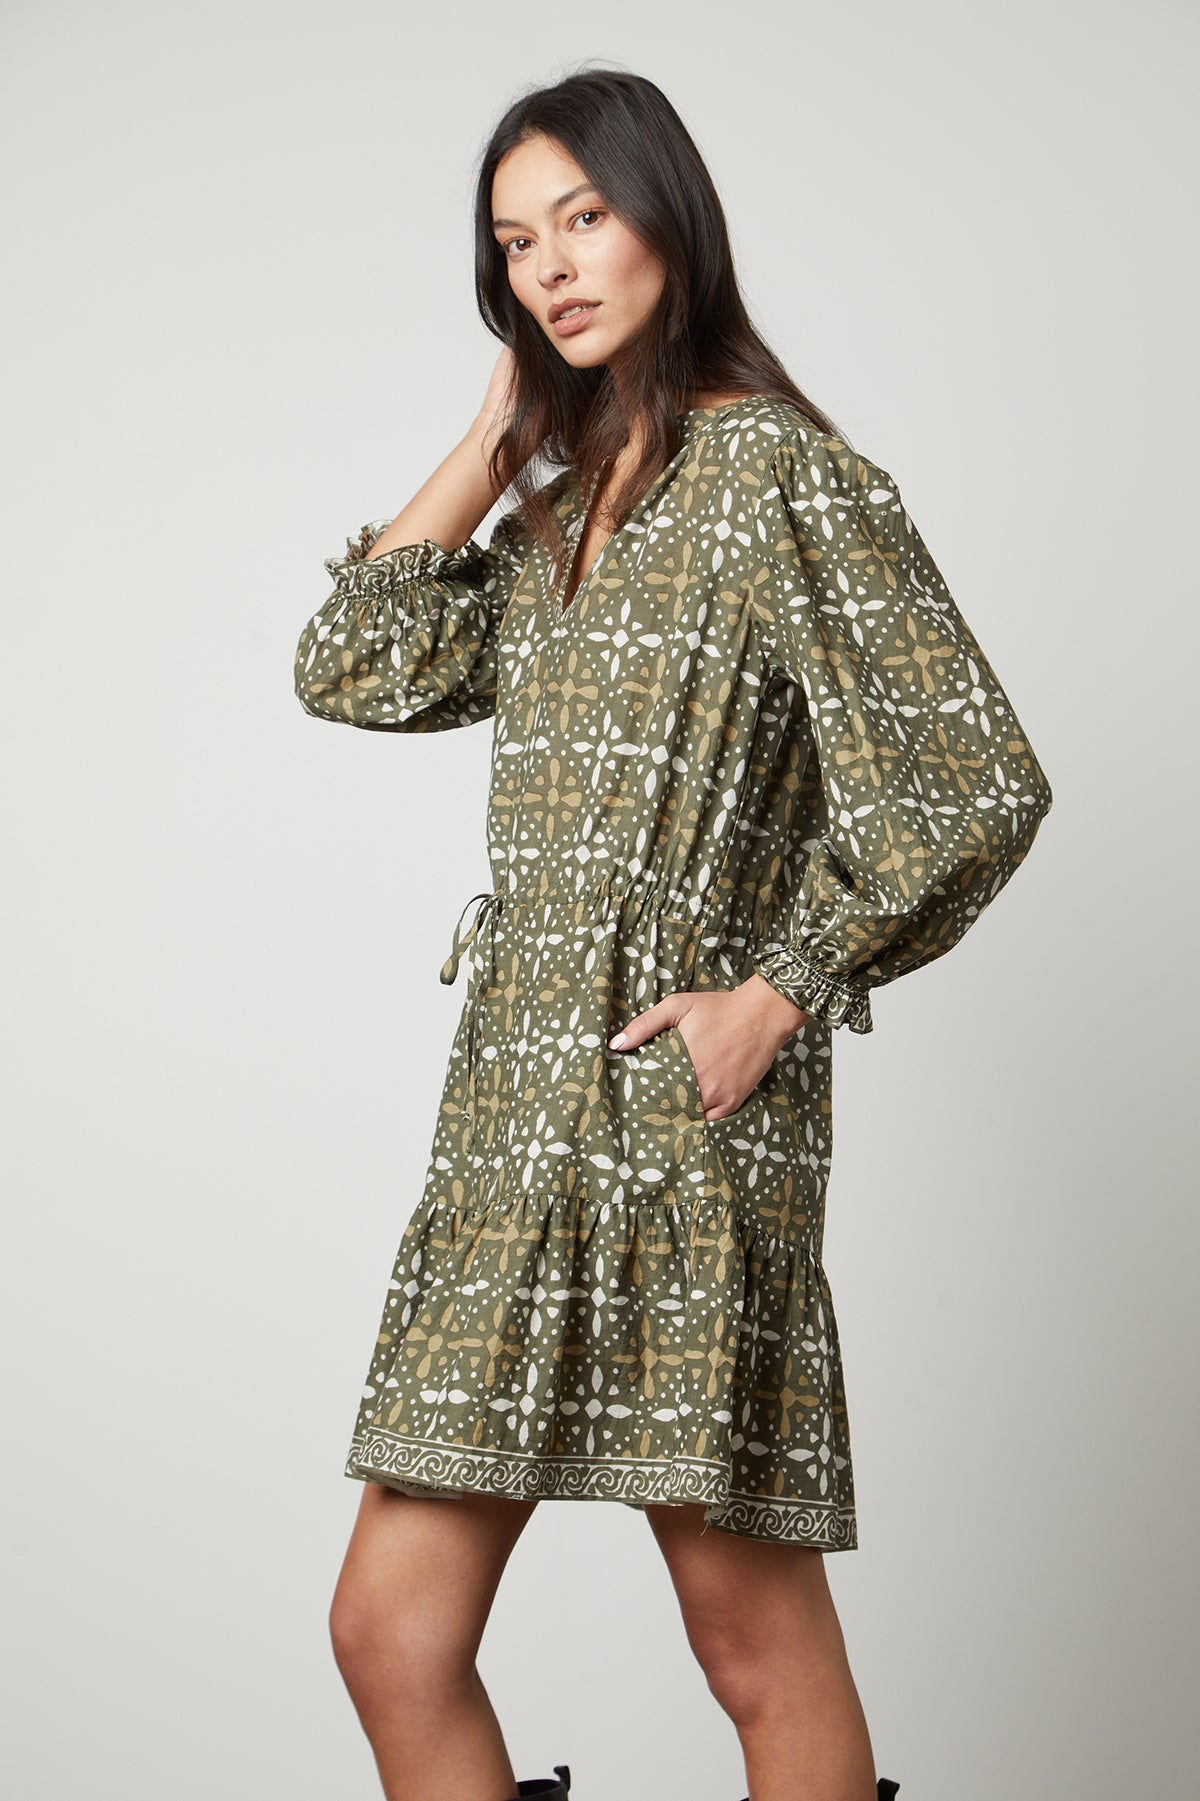   The model is wearing a Velvet by Graham & Spencer KATARINA PRINTED BOHO DRESS. 